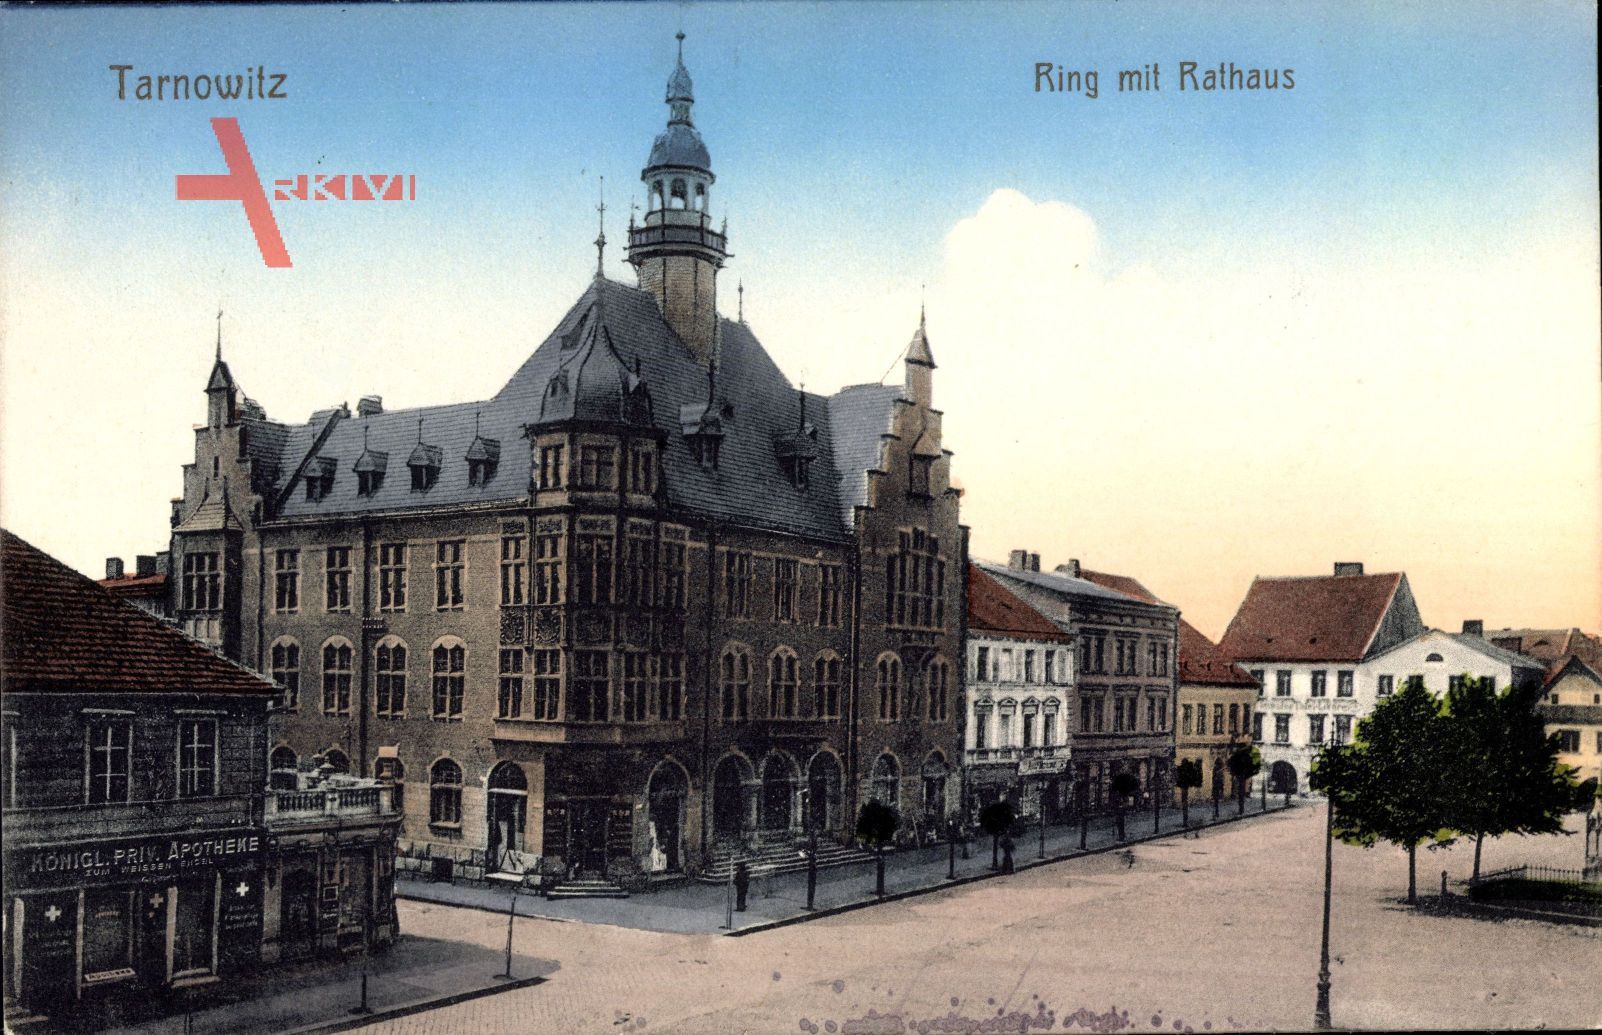 Tarnowskie Góry Tarnowitz Schlesien, Ring mit Rathaus, Ratusz, Rynek